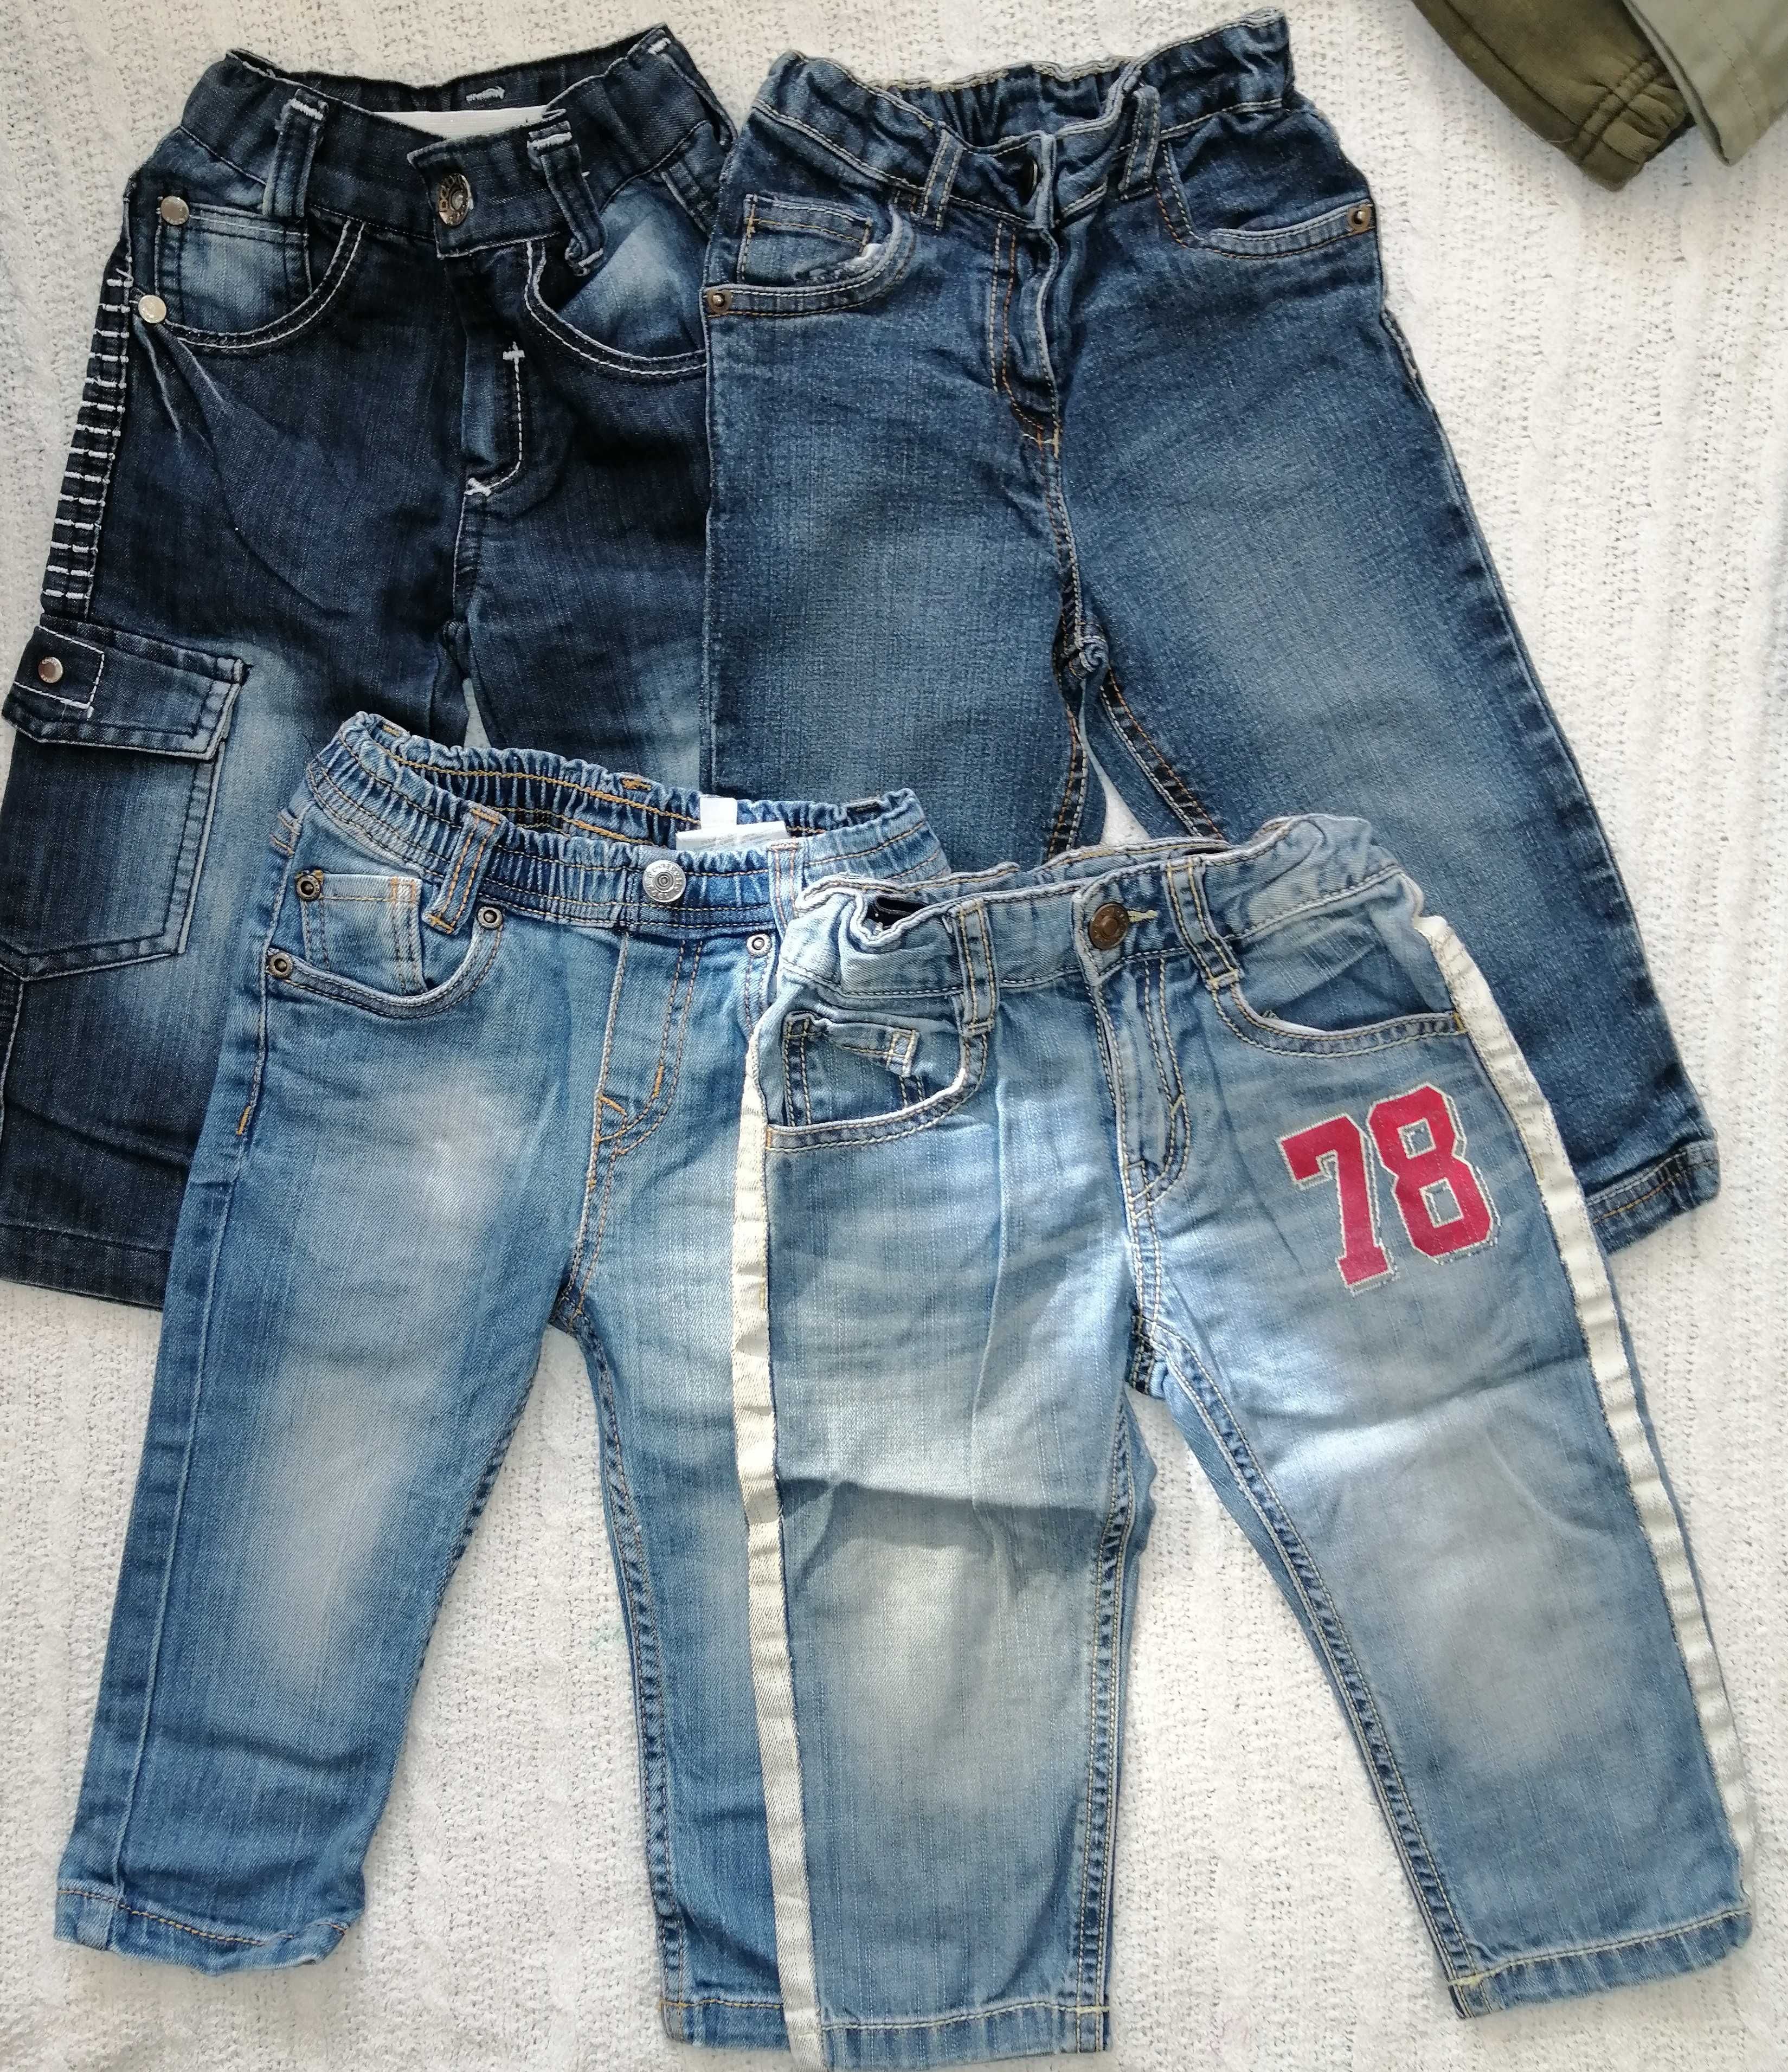 Детские джинсы, спортивные штаны 86-92, 1,5-2,5г.